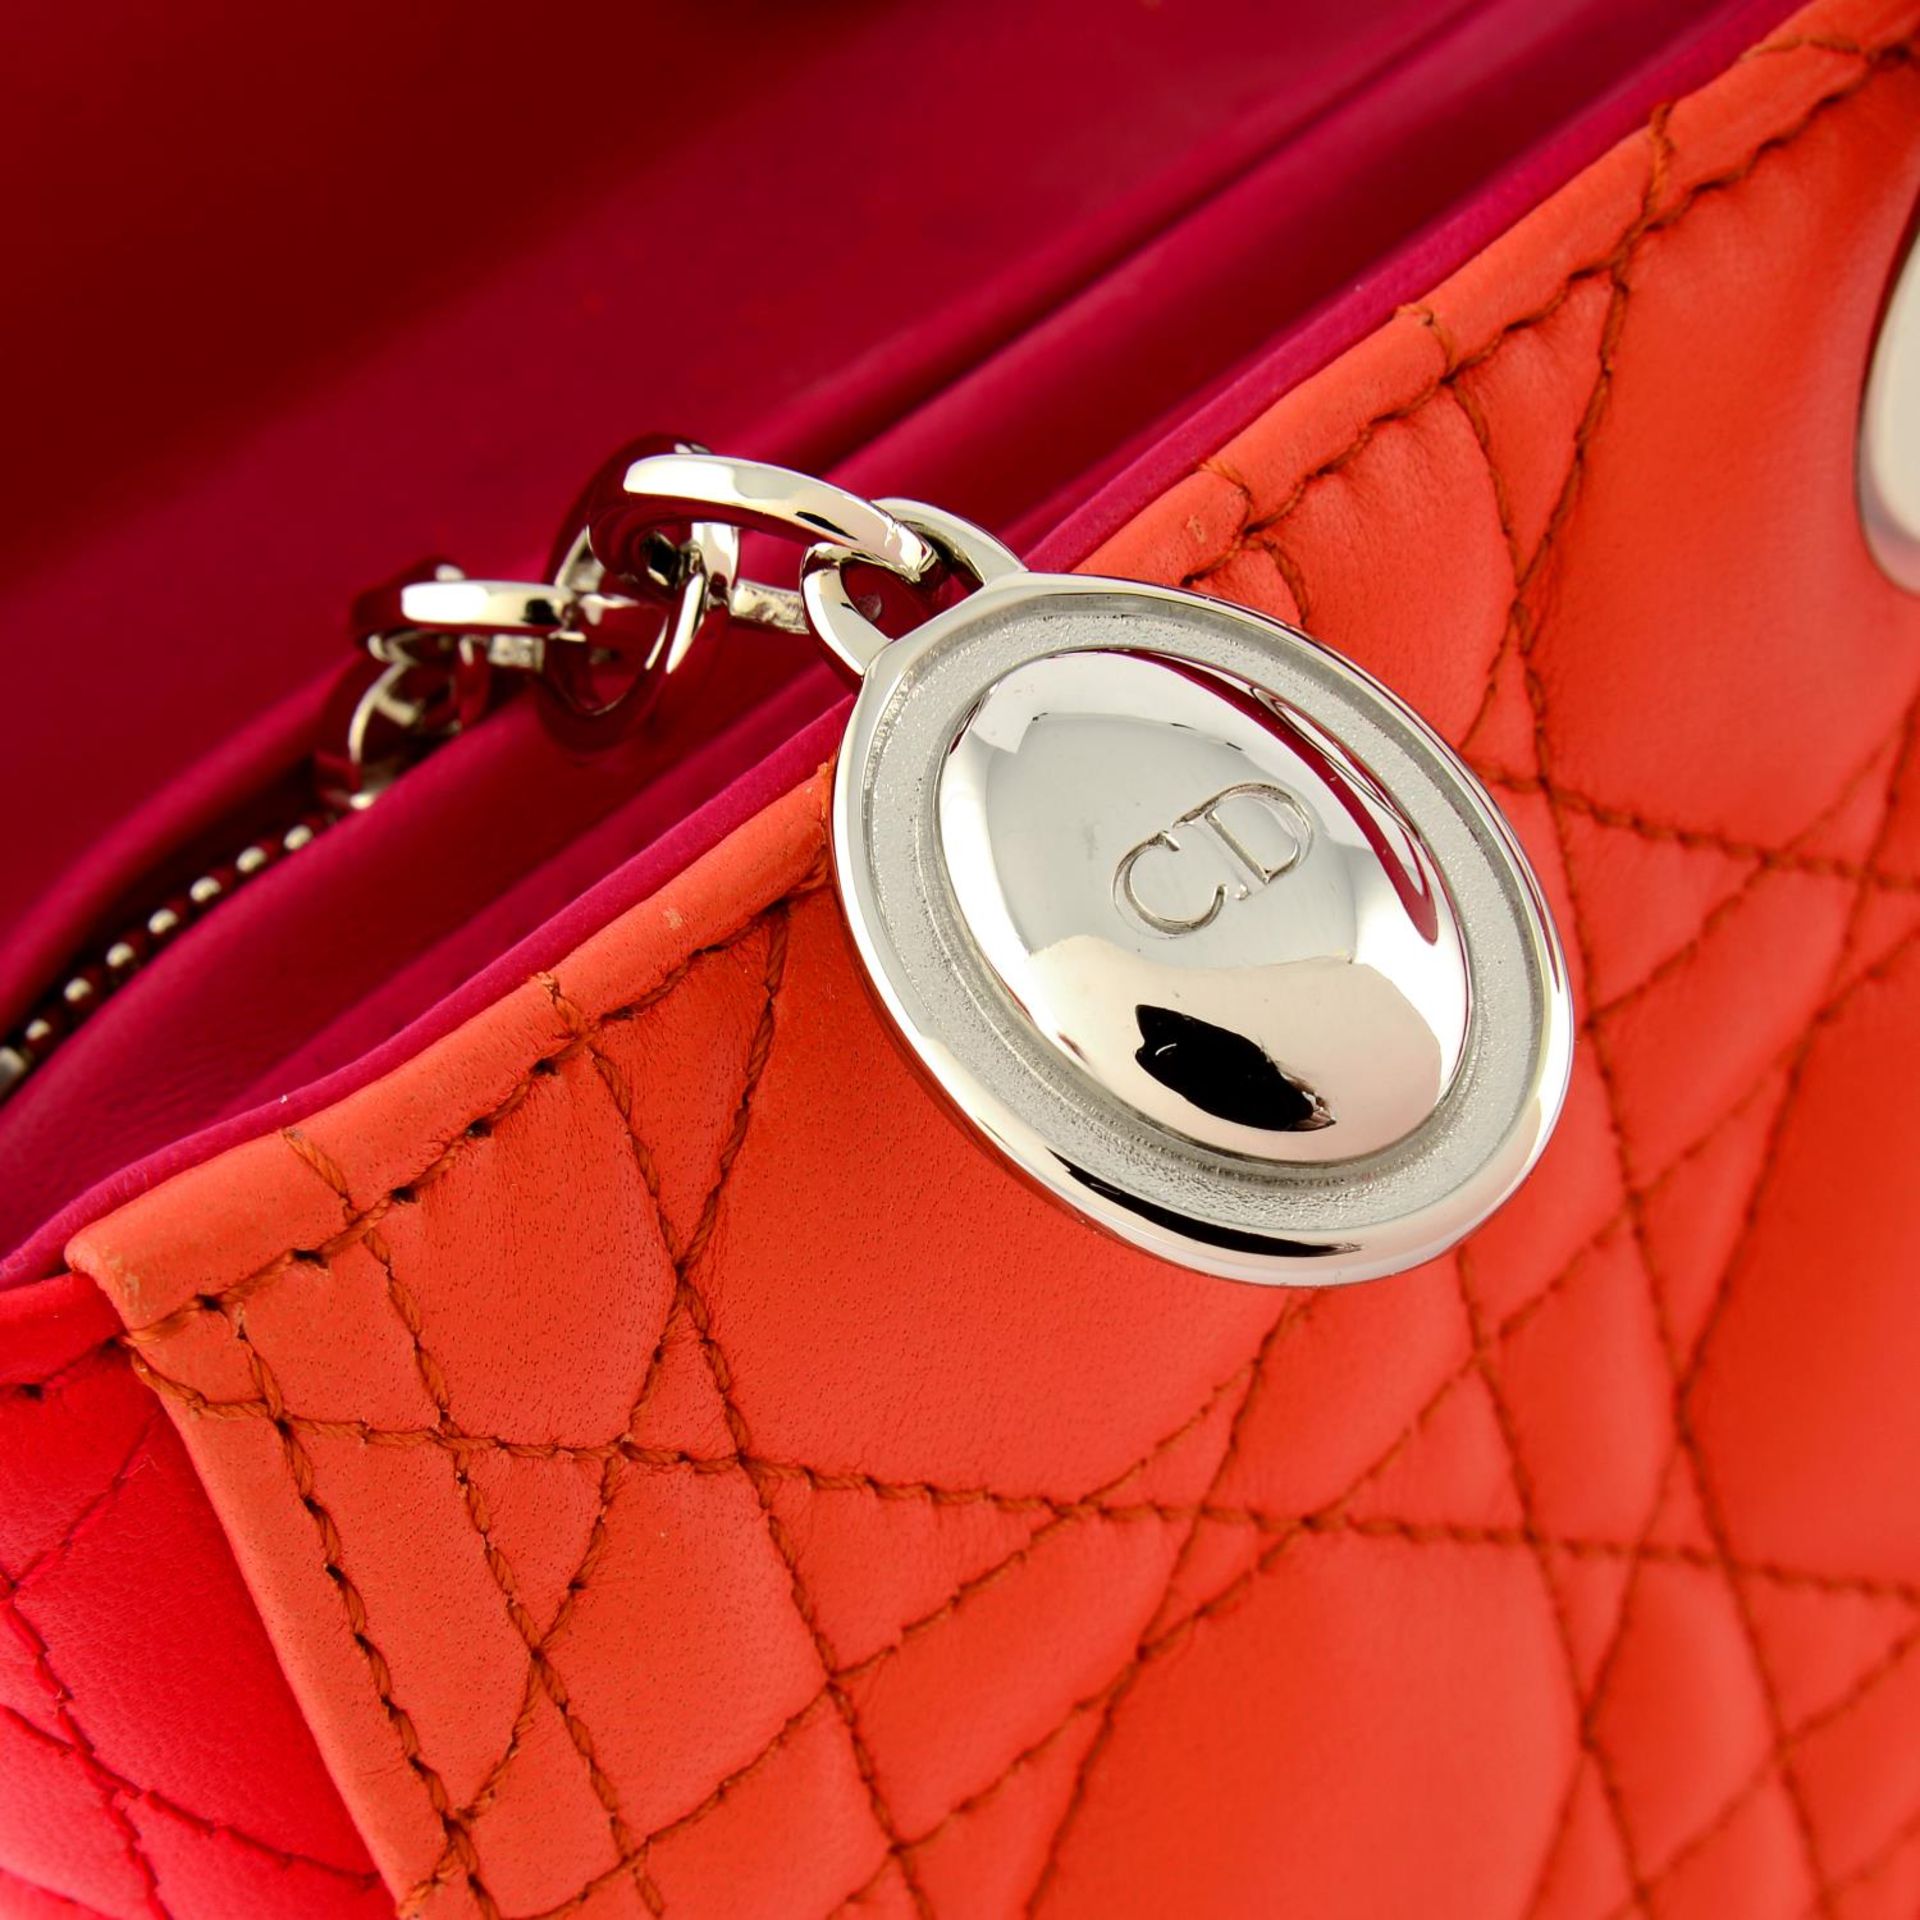 CHRISTIAN DIOR - a Lady Dior handbag. - Image 5 of 7